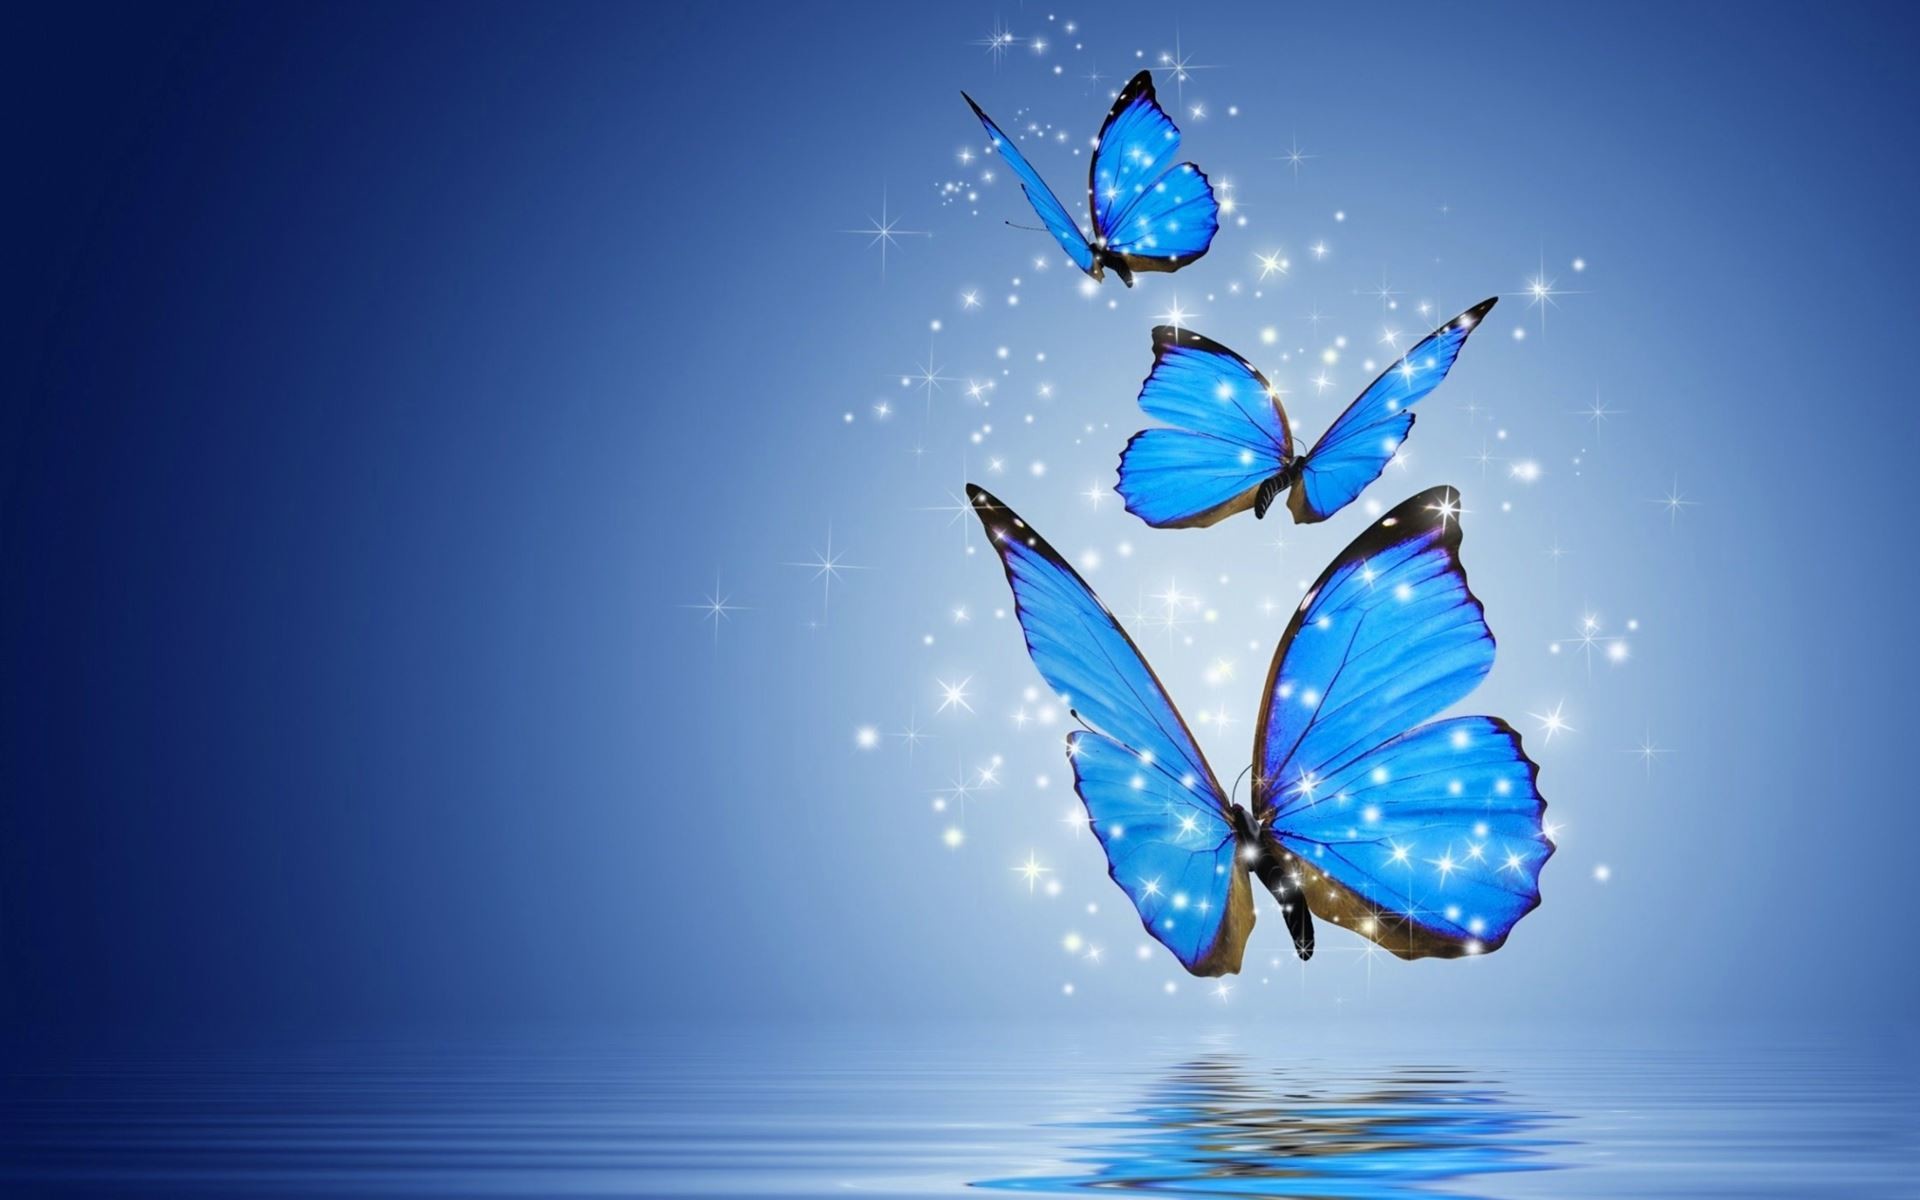 Muốn tìm kiếm những hình nền máy tính bướm miễn phí đẹp nhất? Chúng tôi sẽ giúp bạn! Bộ sưu tập của chúng tôi có hàng trăm mẫu hình nền bướm đa dạng mẫu mã và màu sắc đẹp mắt. Chỉ cần tải xuống và cài đặt, bạn sẽ có một màn hình đẹp và sáng tạo.